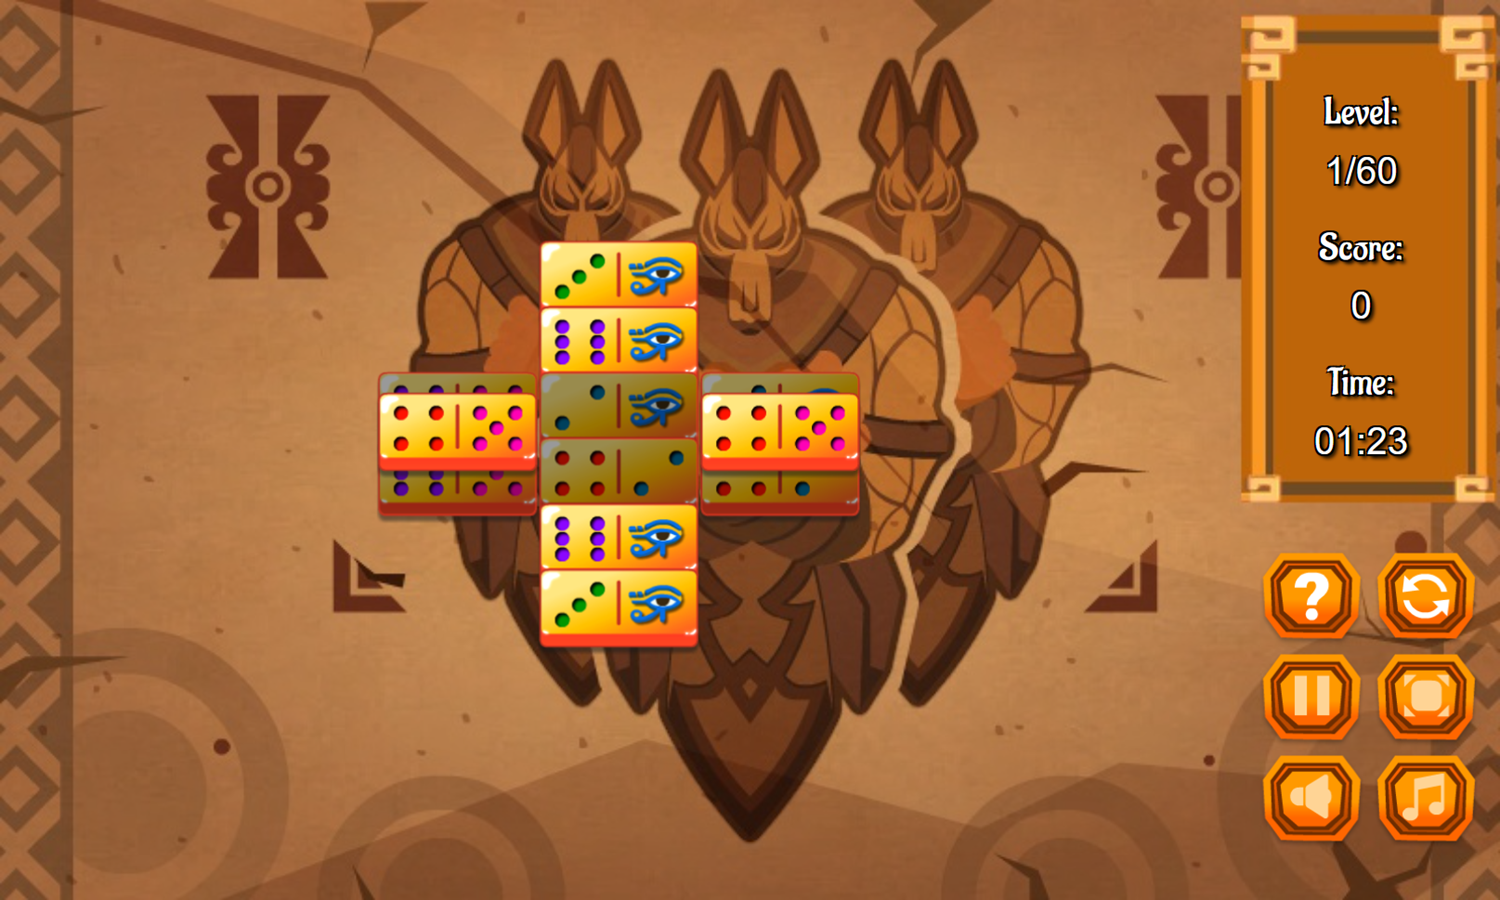 Mah-Domino Game Level Start Screenshot.